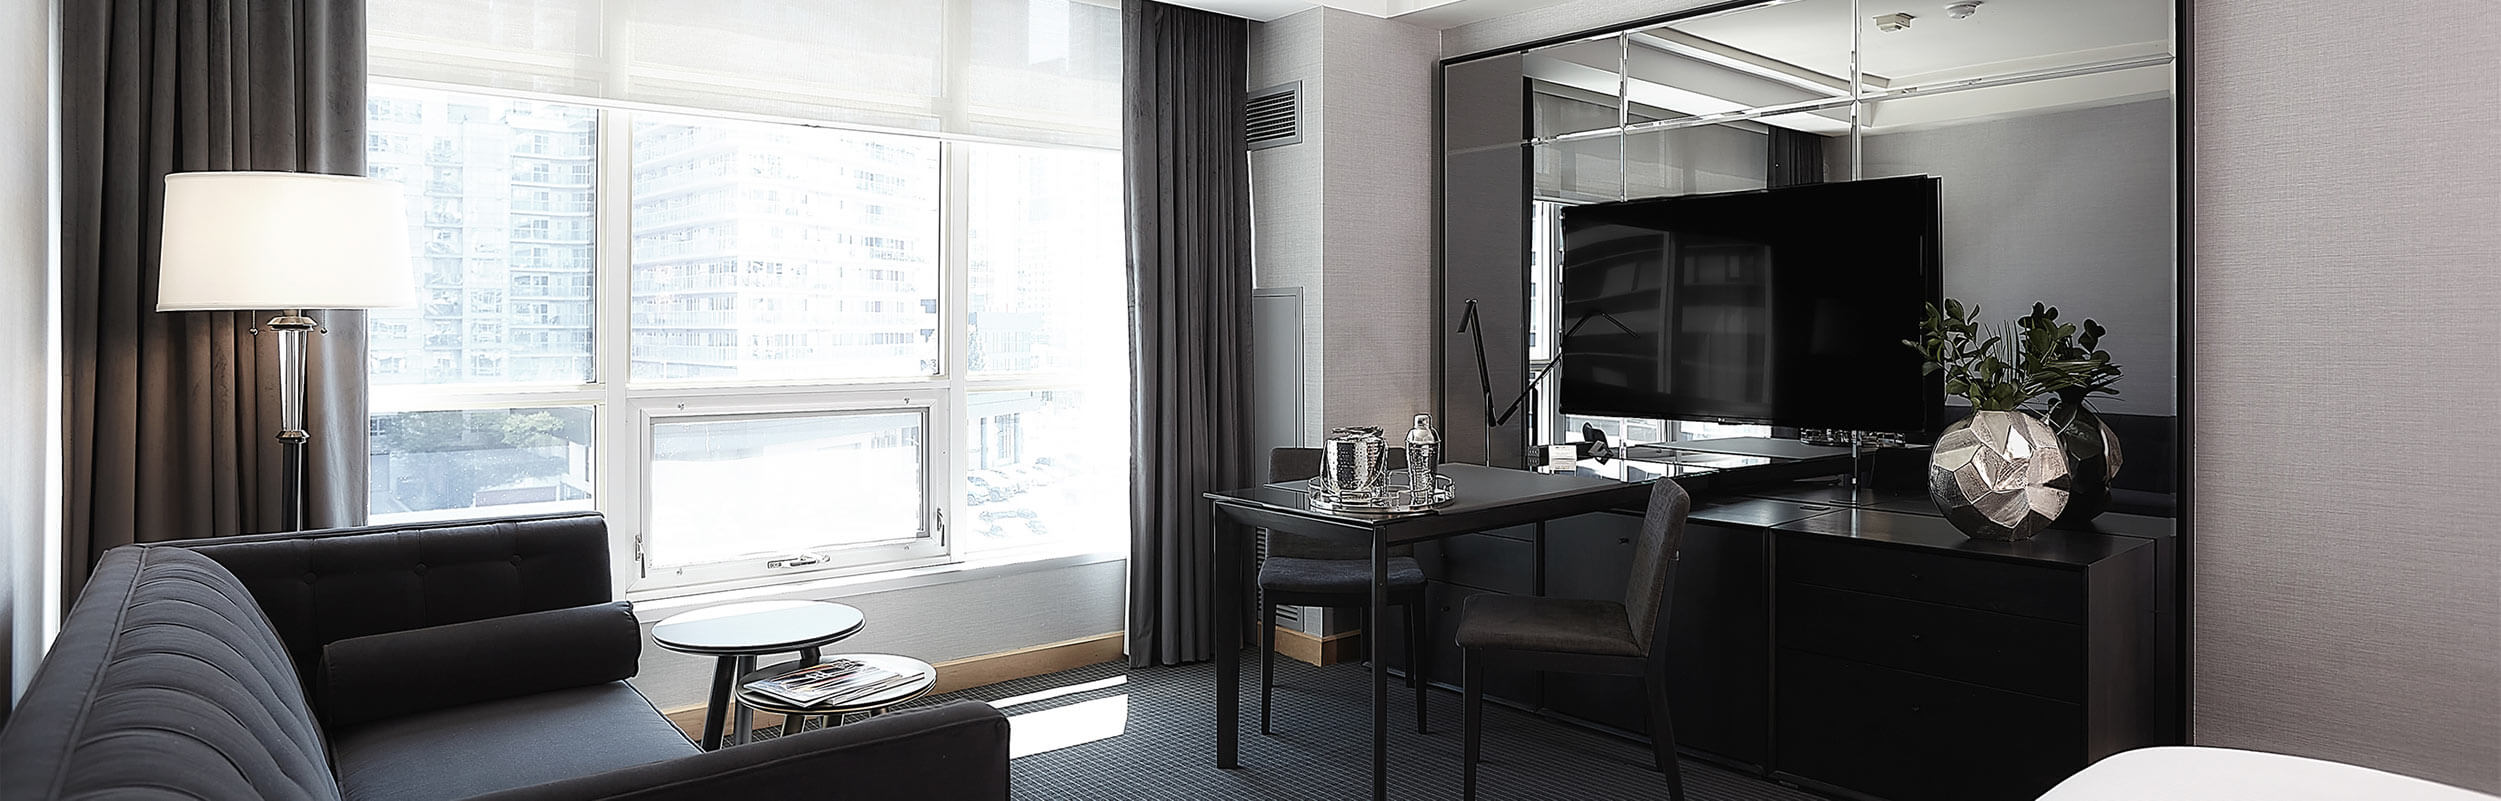 Luxury Room at The SoHo Hotel